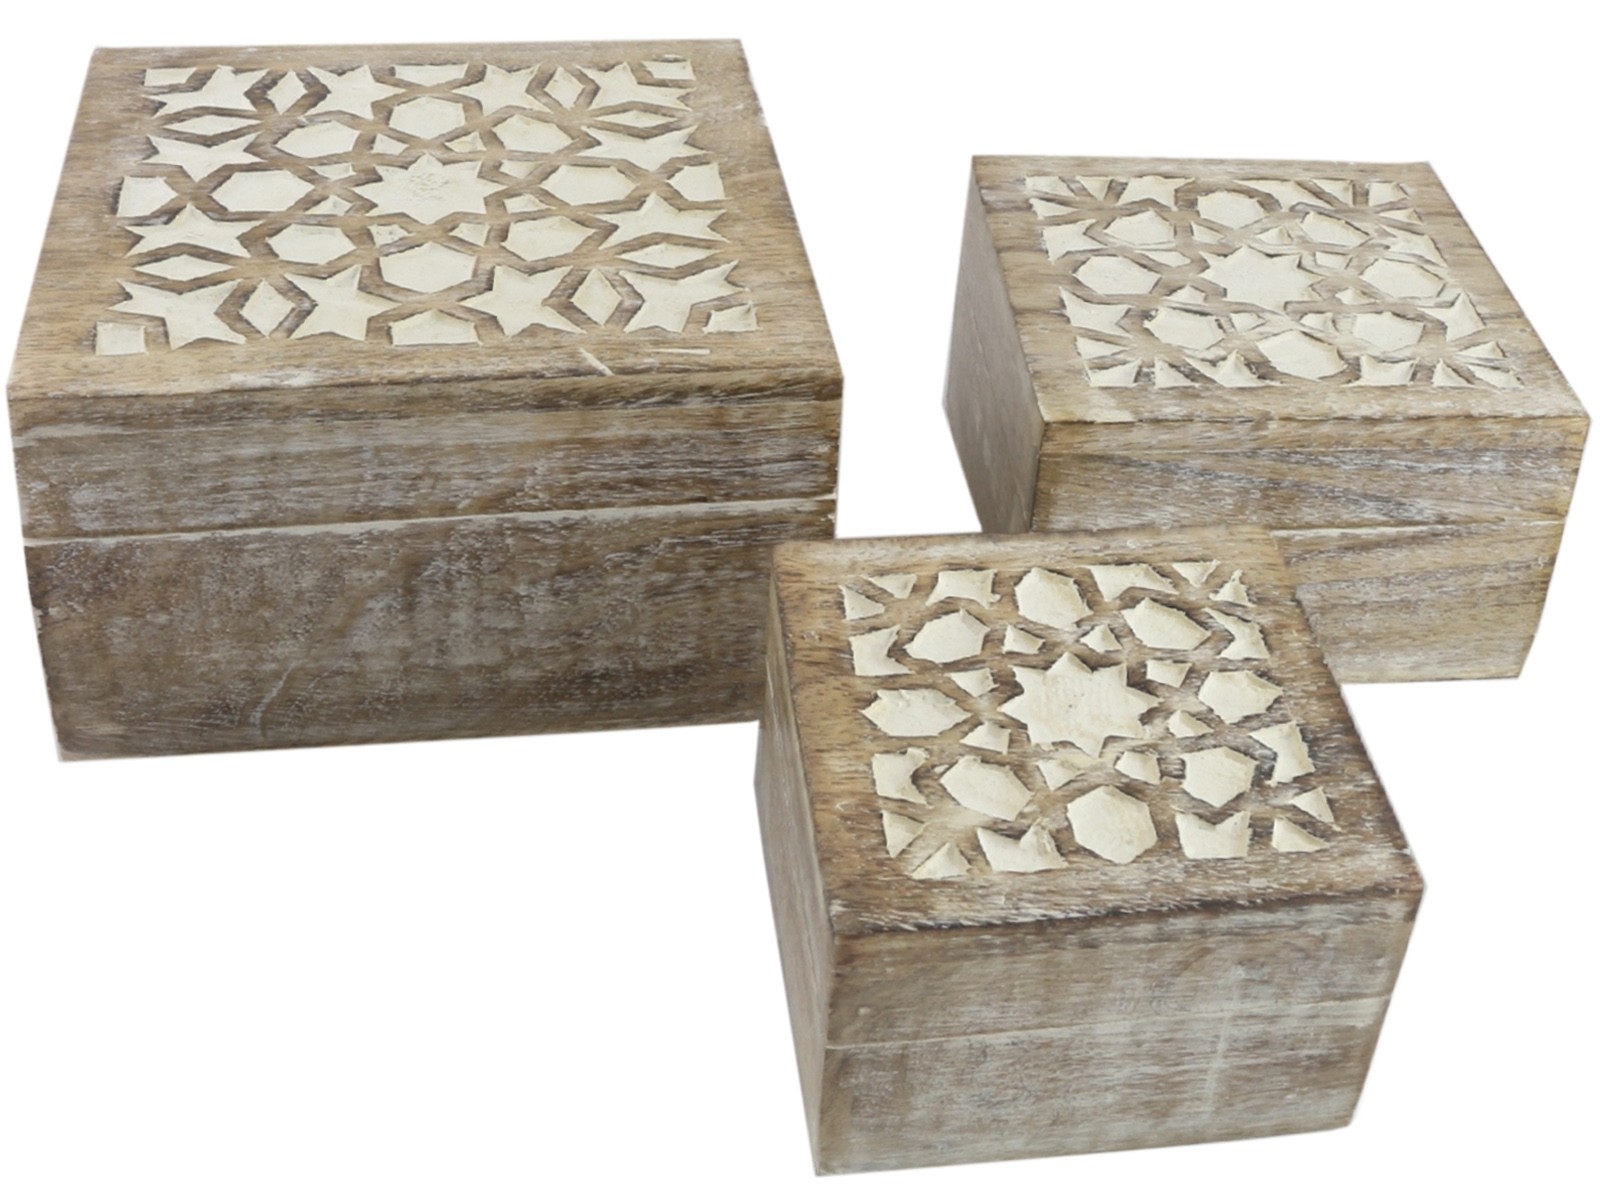 Mango Wood Set Of 3 Square Boxes - Burnt White Finish 18cm